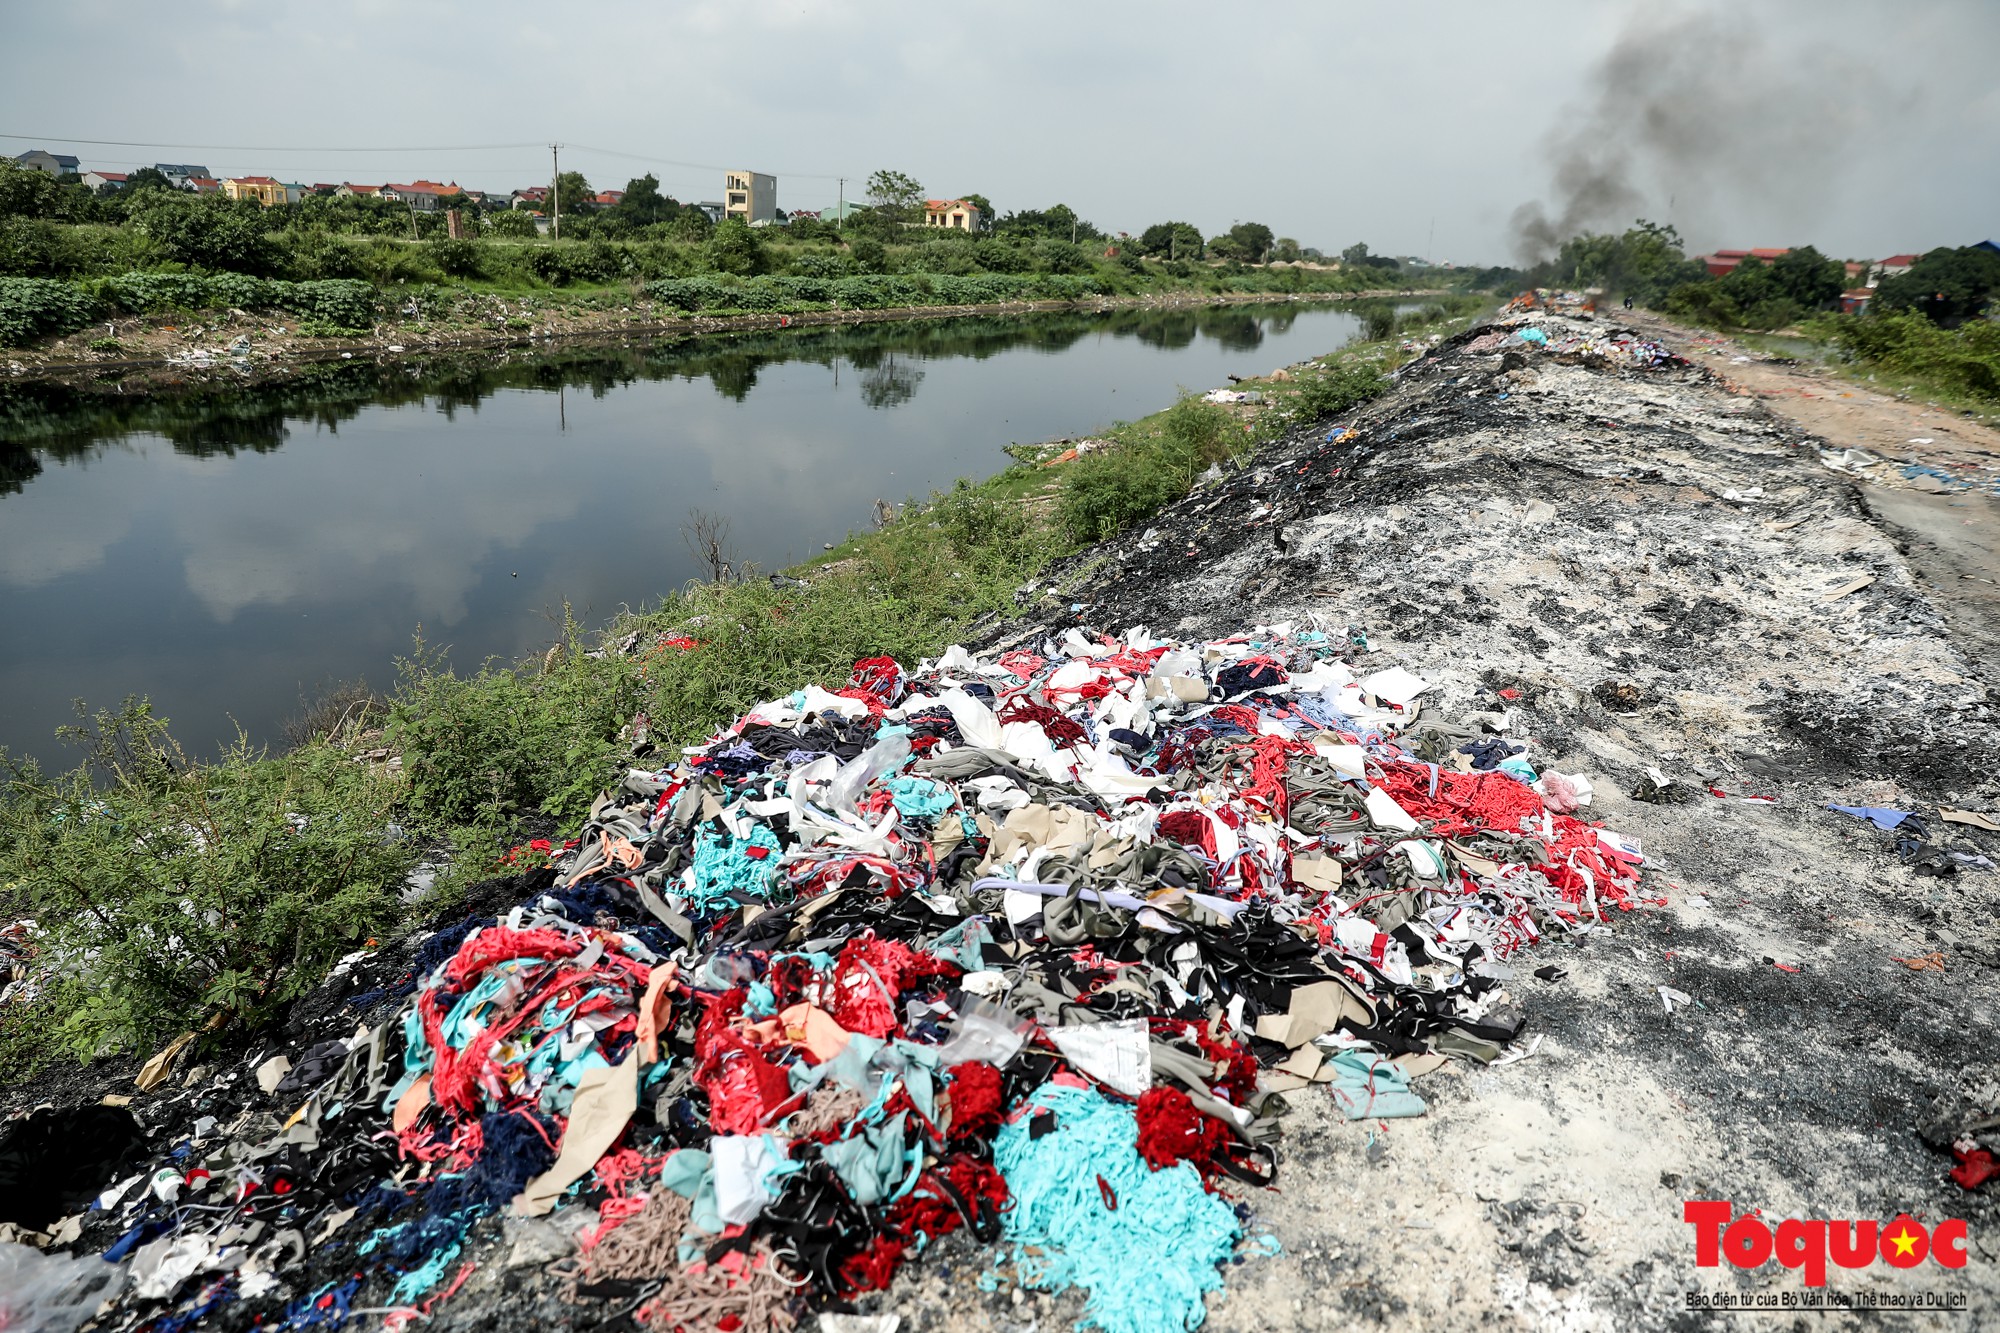 Bộ sưu tập hình ảnh ô nhiễm môi trường ở Hà Nội được ghi lại bởi nhiều phóng viên